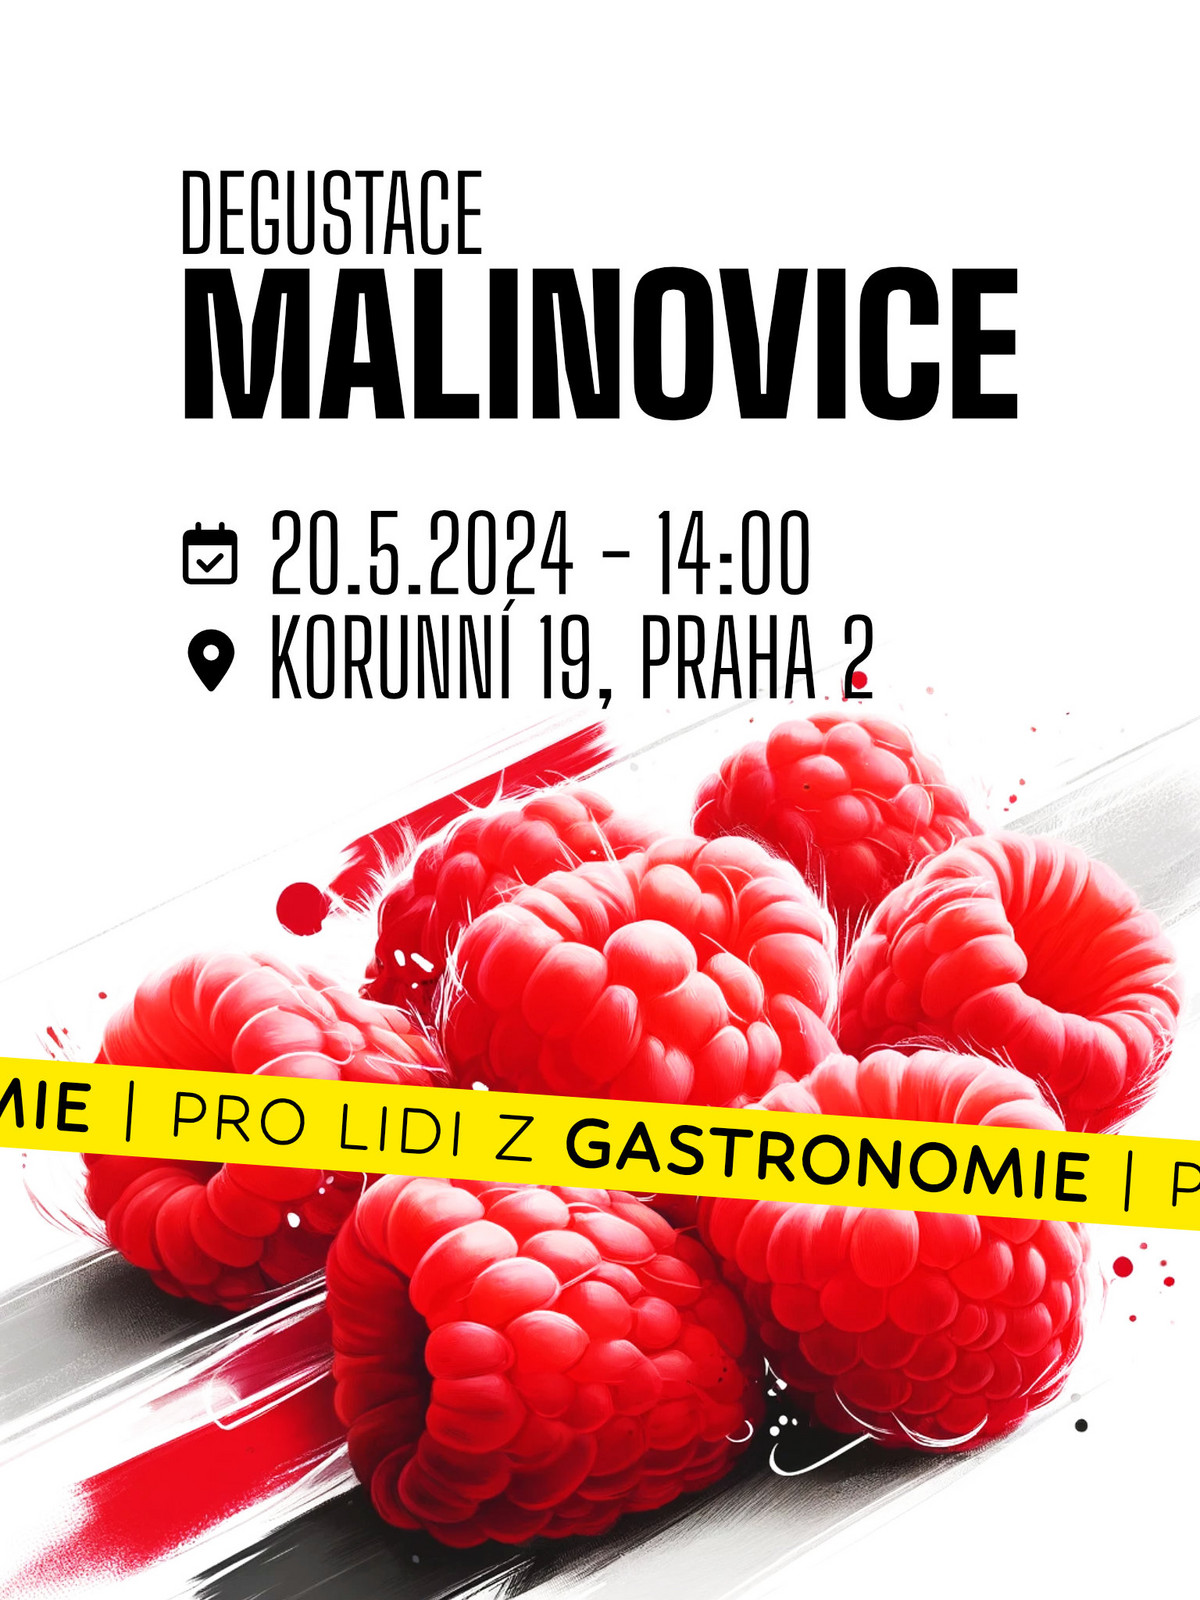 Lihovarek.cz  20|5 - Malinovice (pro gastronomii)